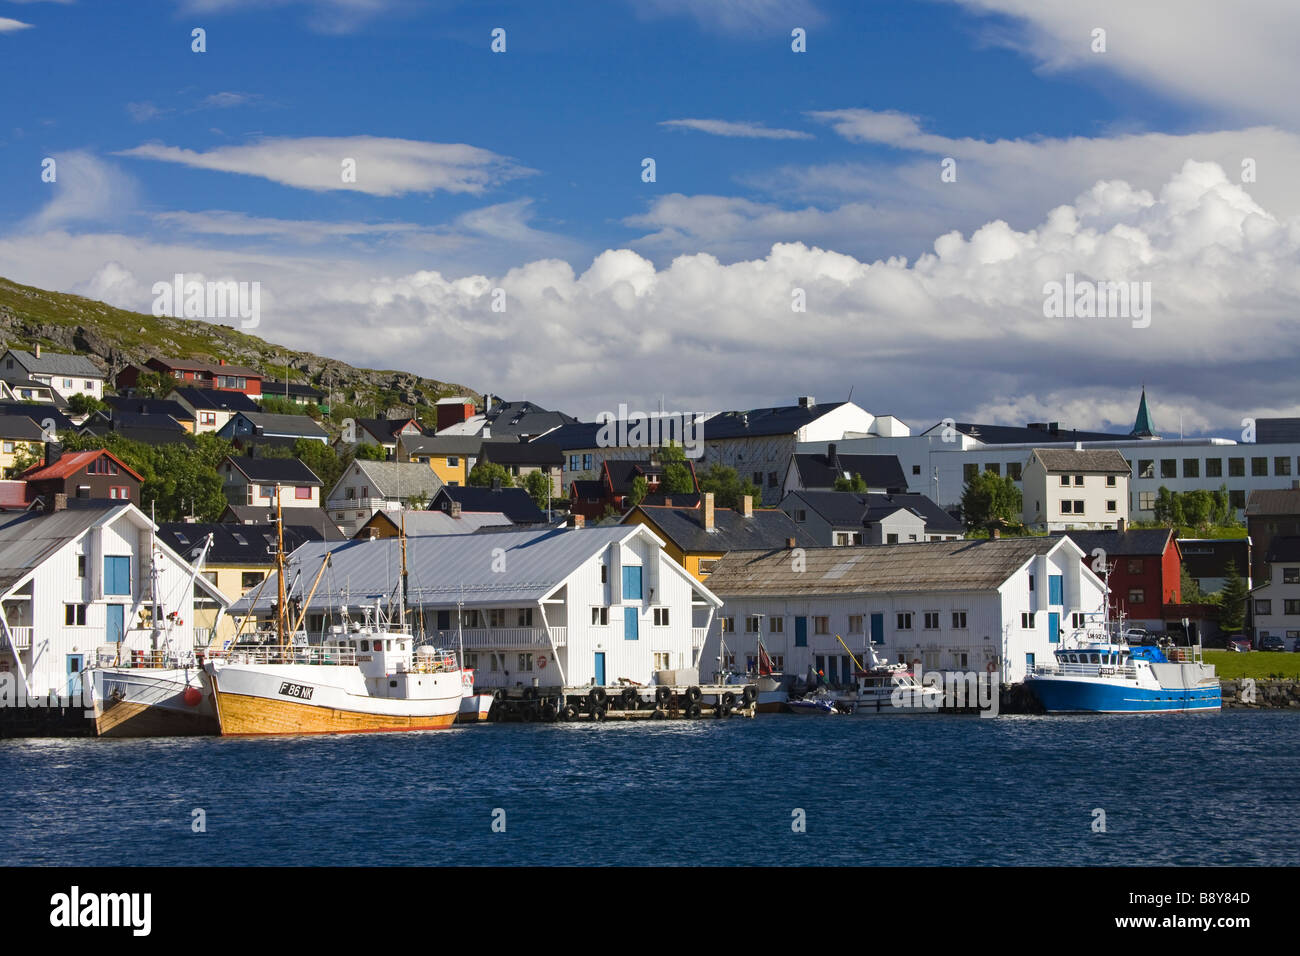 Bateaux amarrés à un port, Honningsvag Honningsvag, Port, l'île de Mageroya, Nordkapp, comté de Finnmark, Norvège Banque D'Images